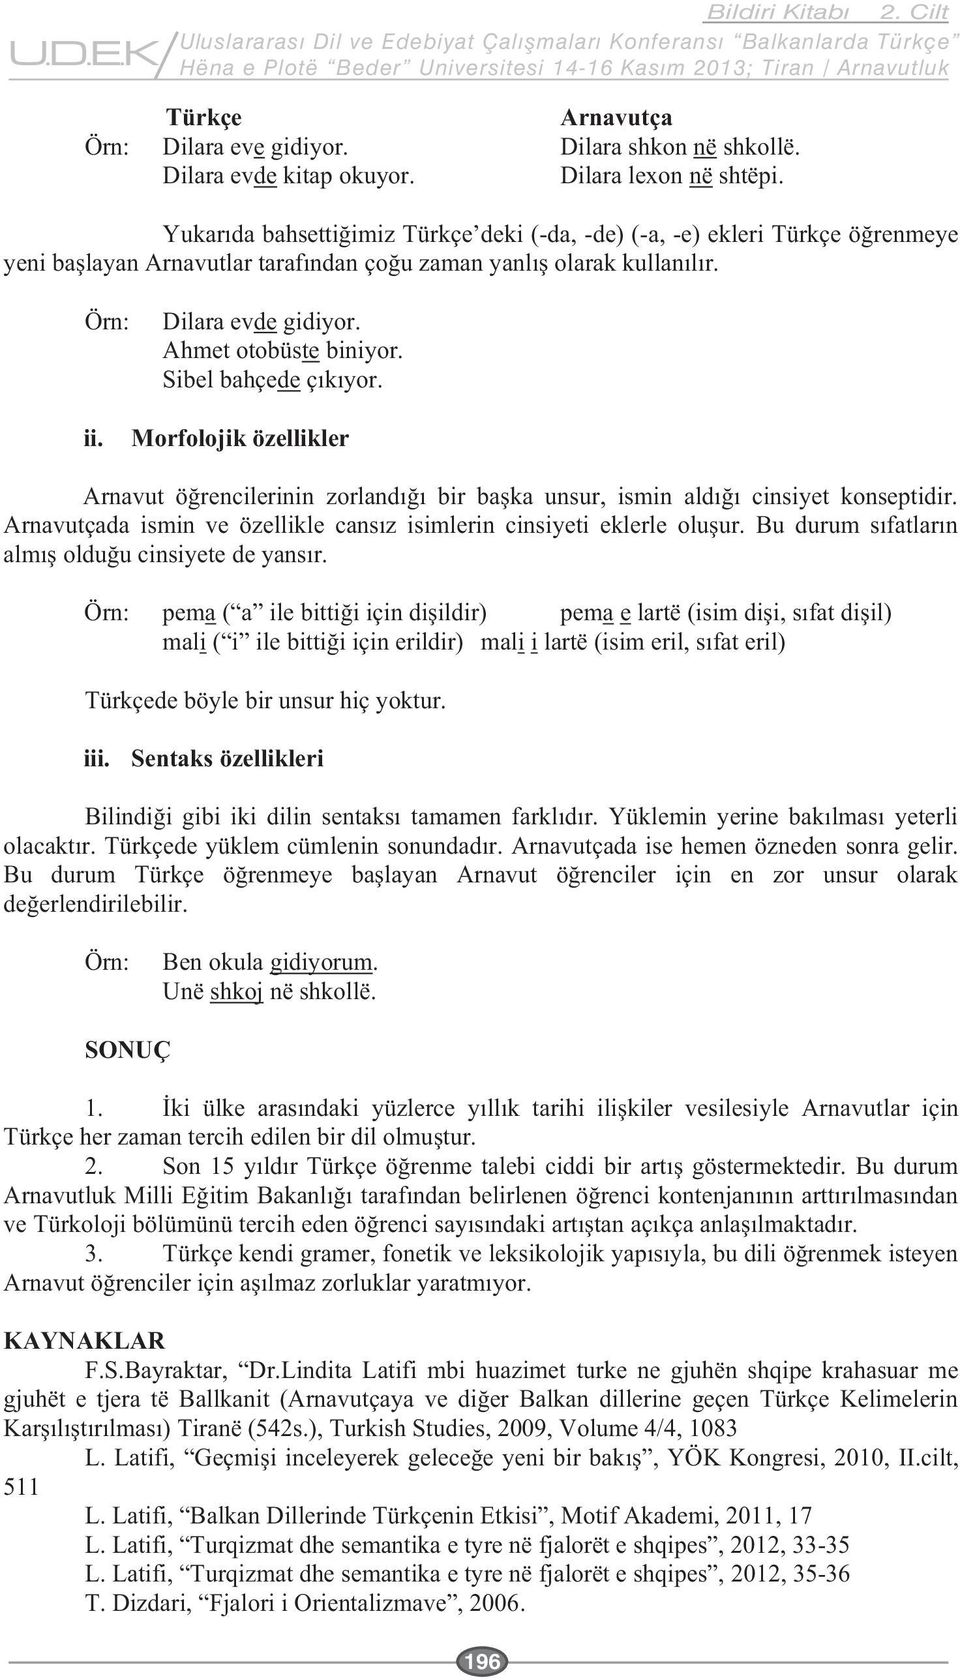 Sibel bahçede Morfolojik özellikler Arnavu Örn: pema pema e mali mali i Türkçede böyle bir unsur hiç yoktur. iii.